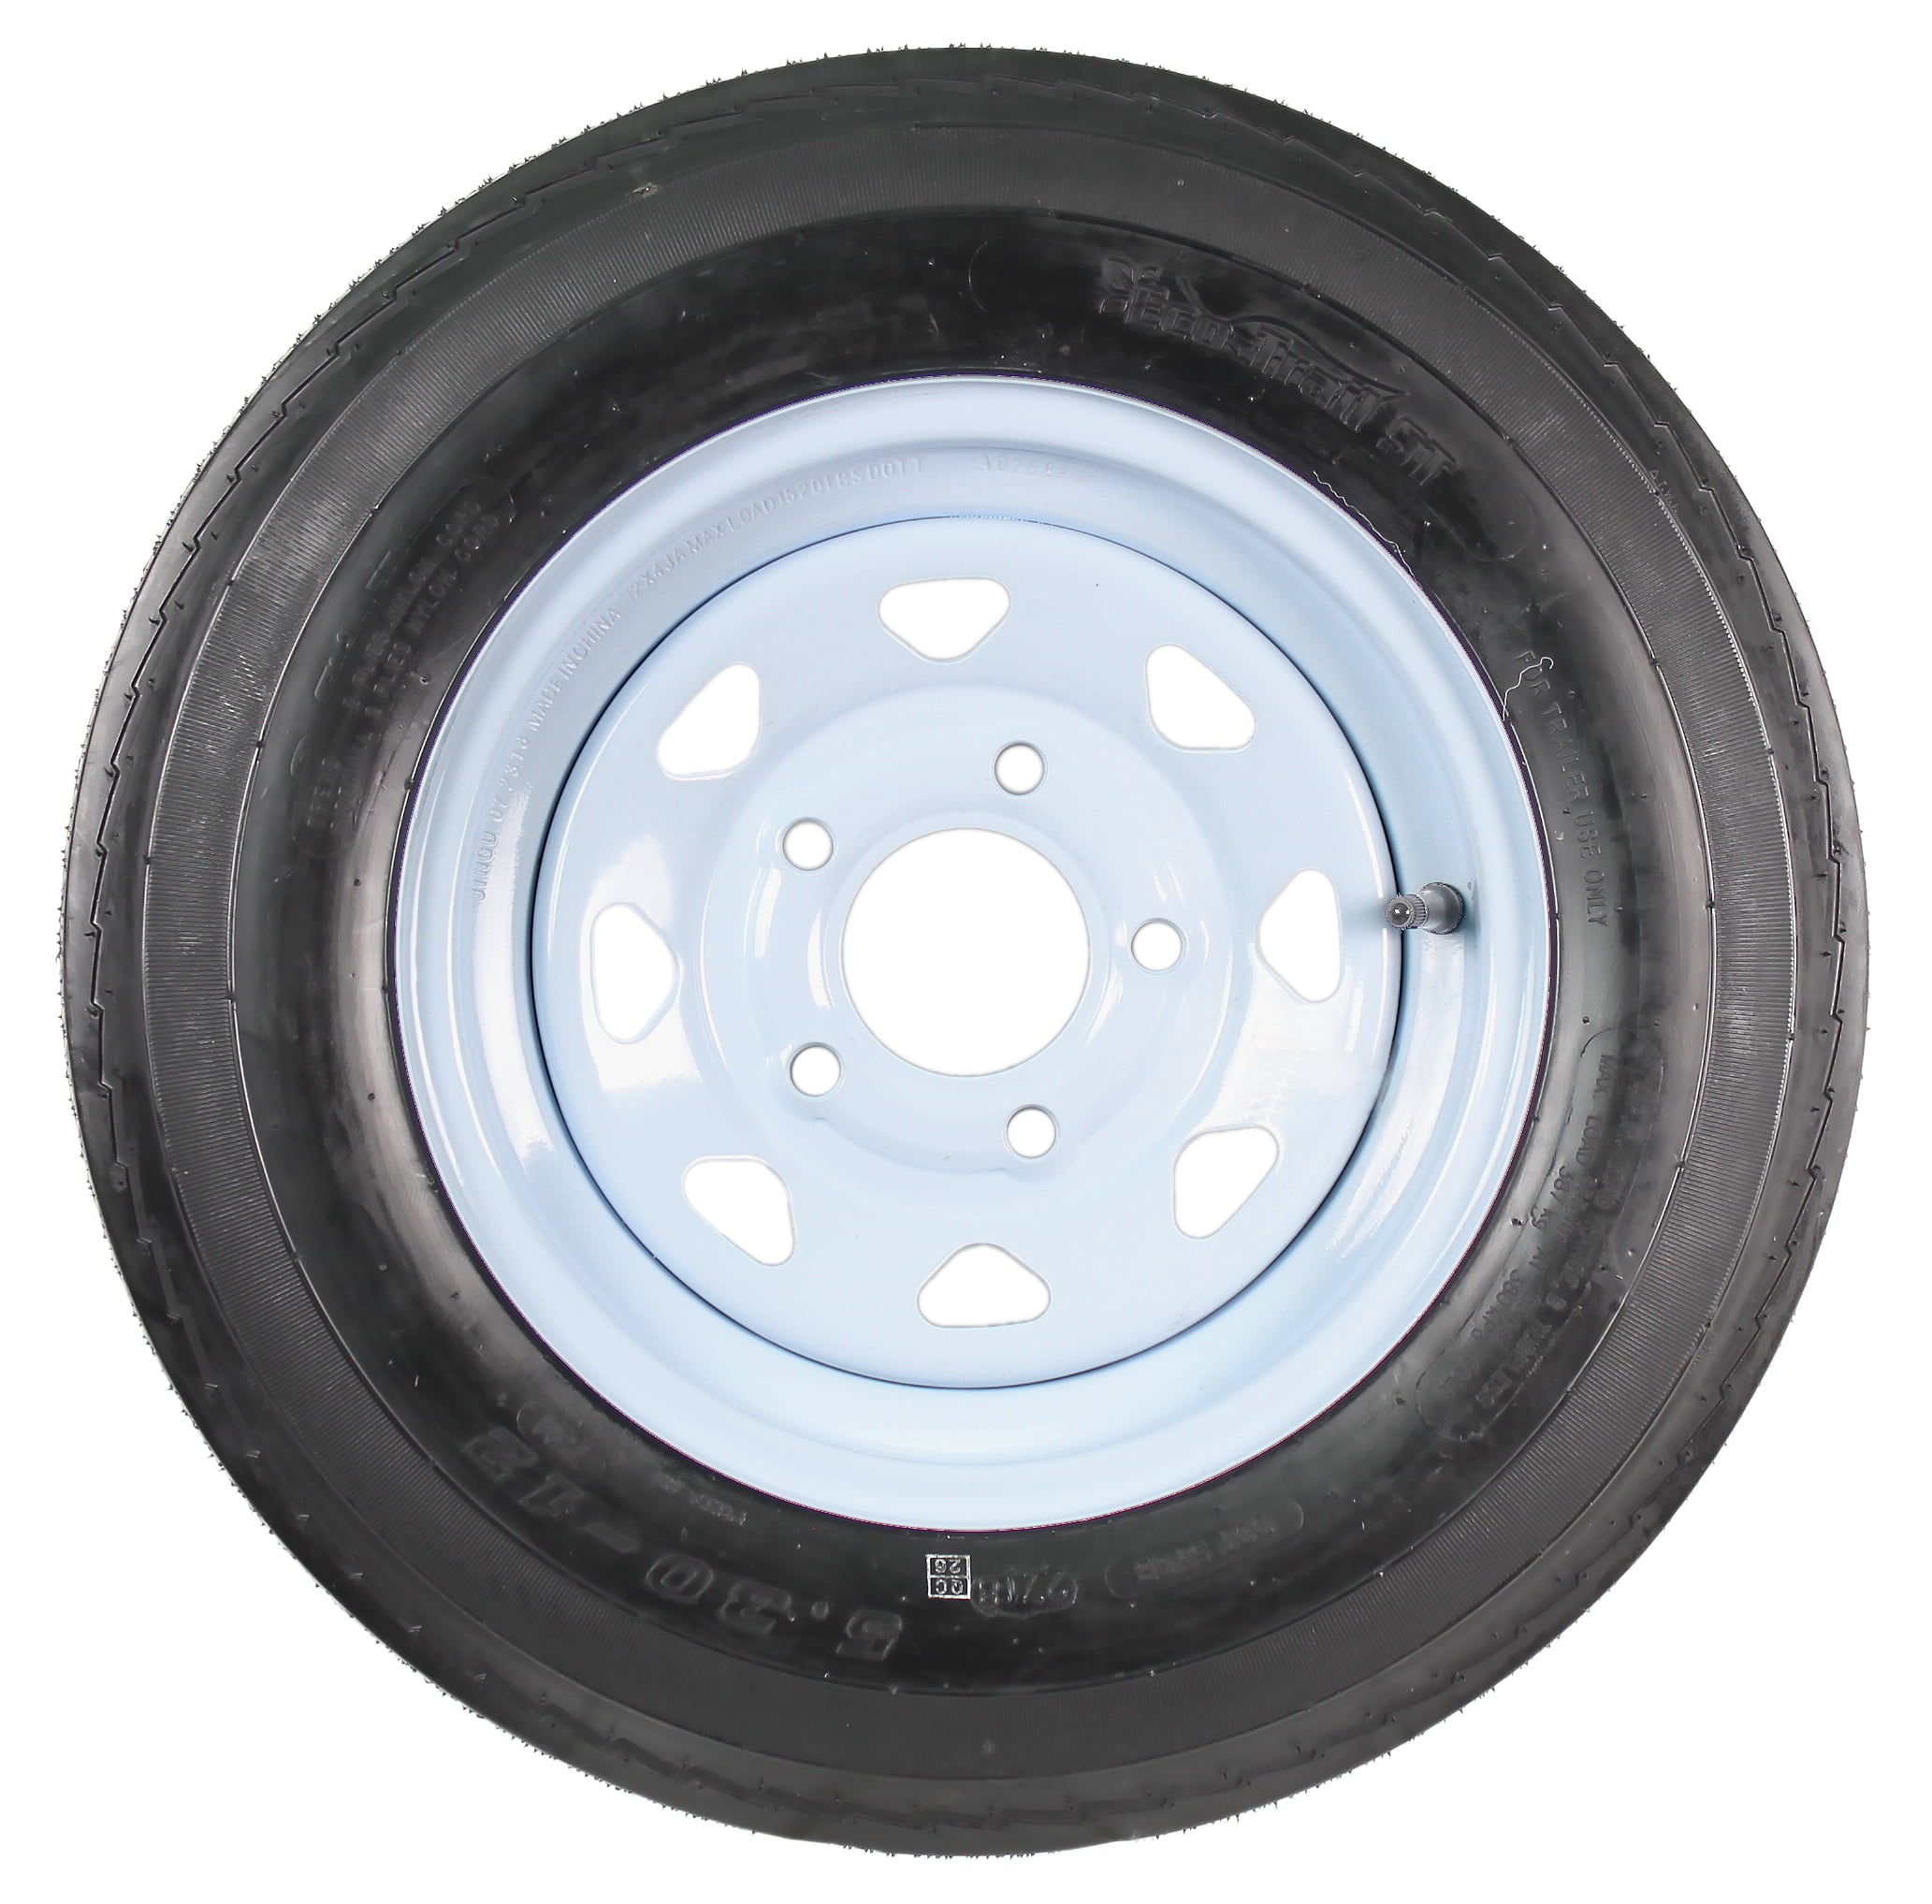 Two Trailer Tires On Rims 5.30-12 530-12 5.30 X 12 5 Hole Wheel White Spoke